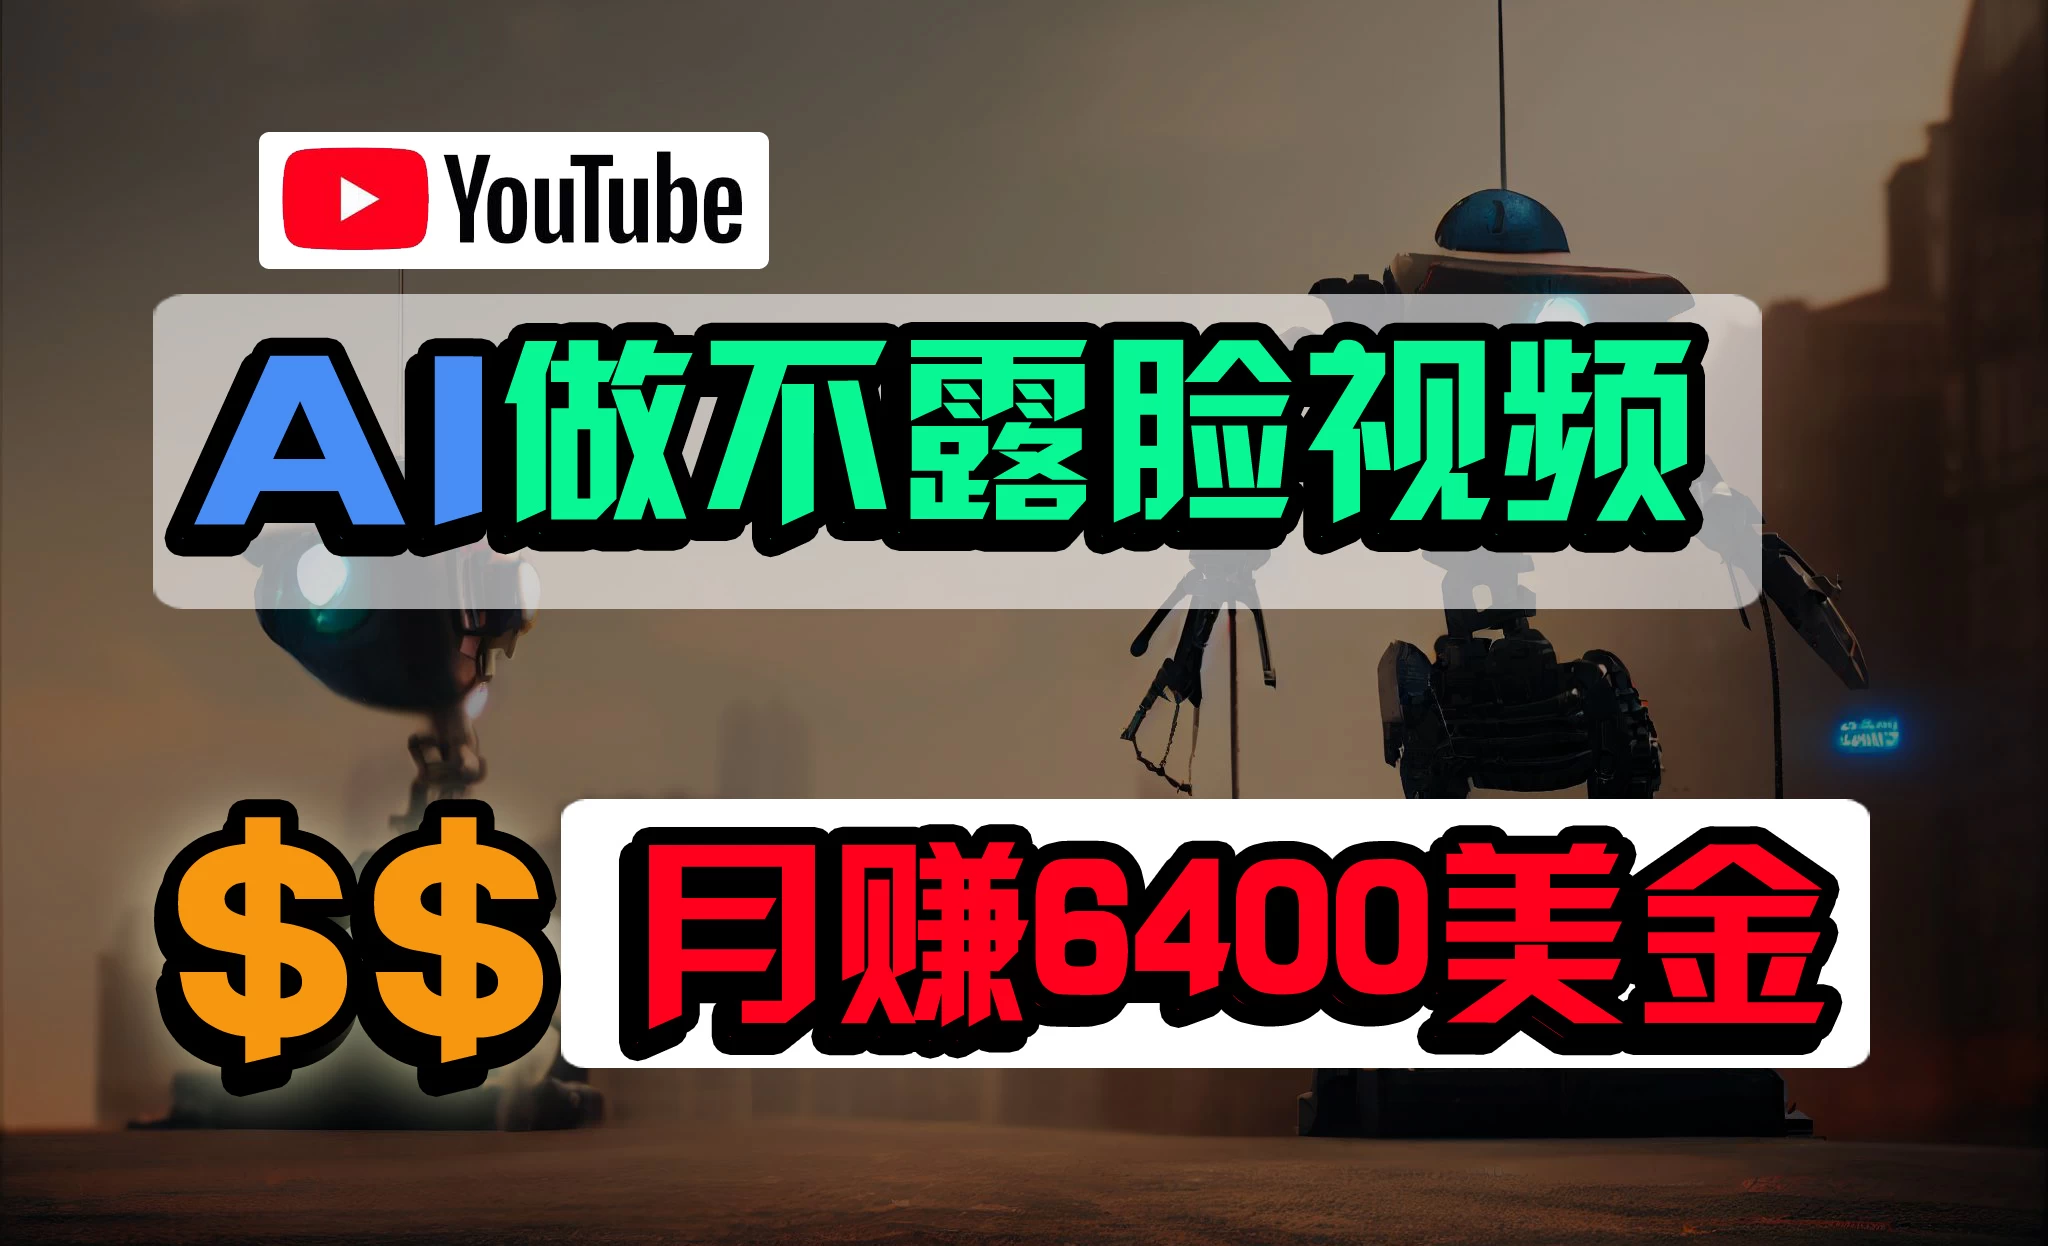 不露脸YouTube视频/月6400美金/无任何门槛 第1张